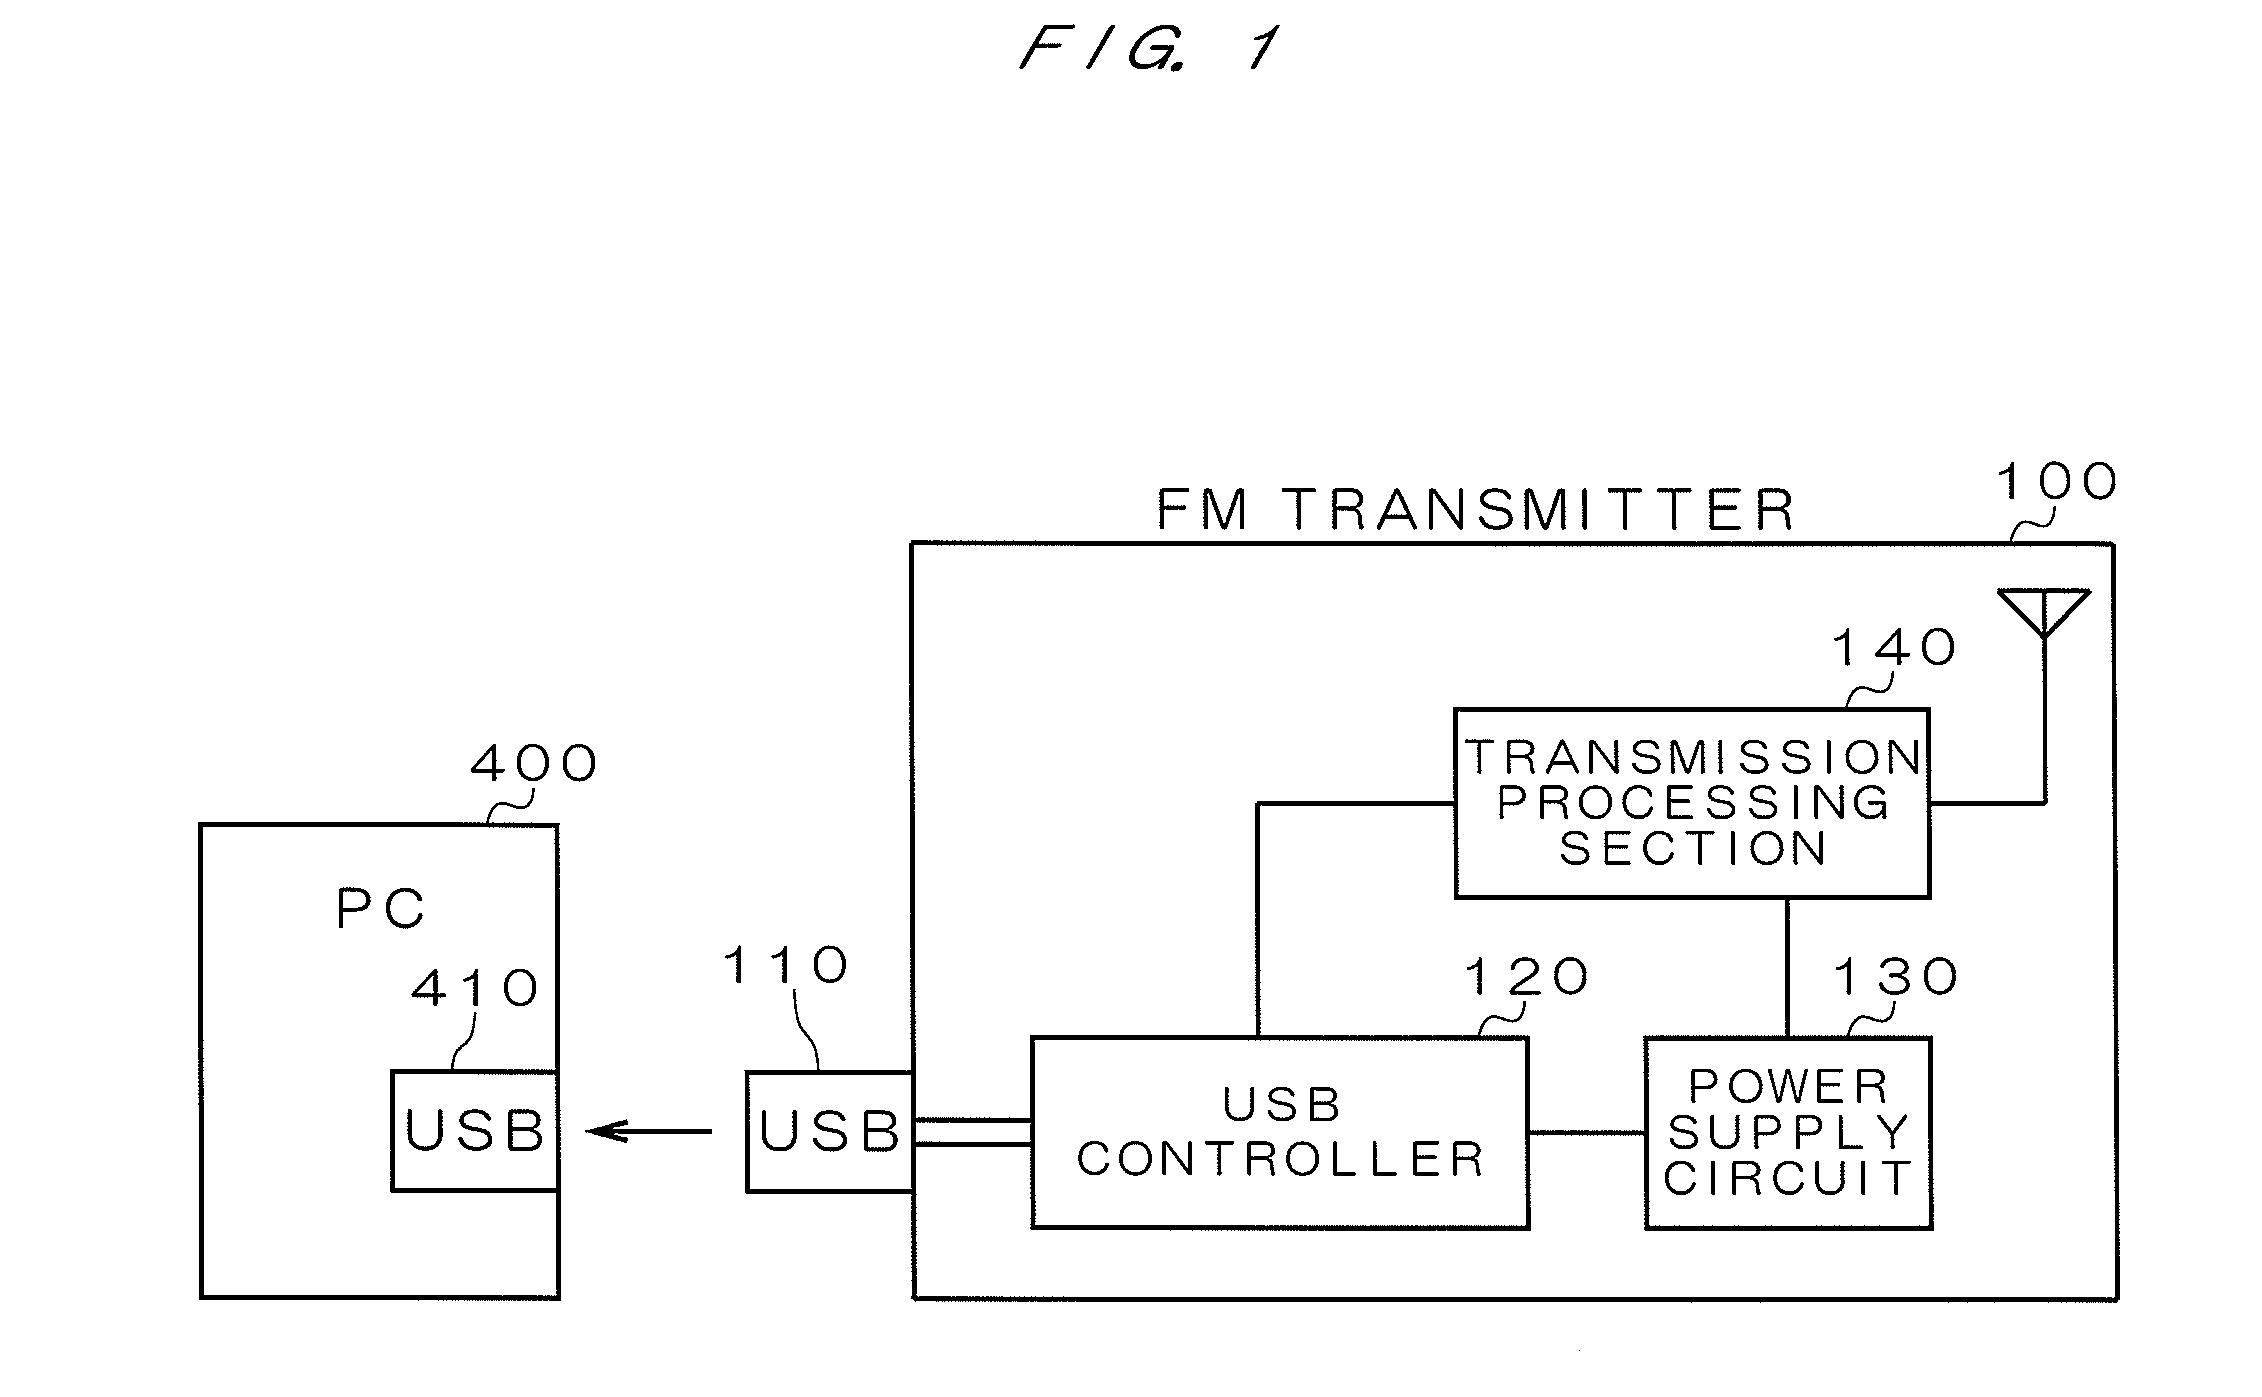 FM transmitter